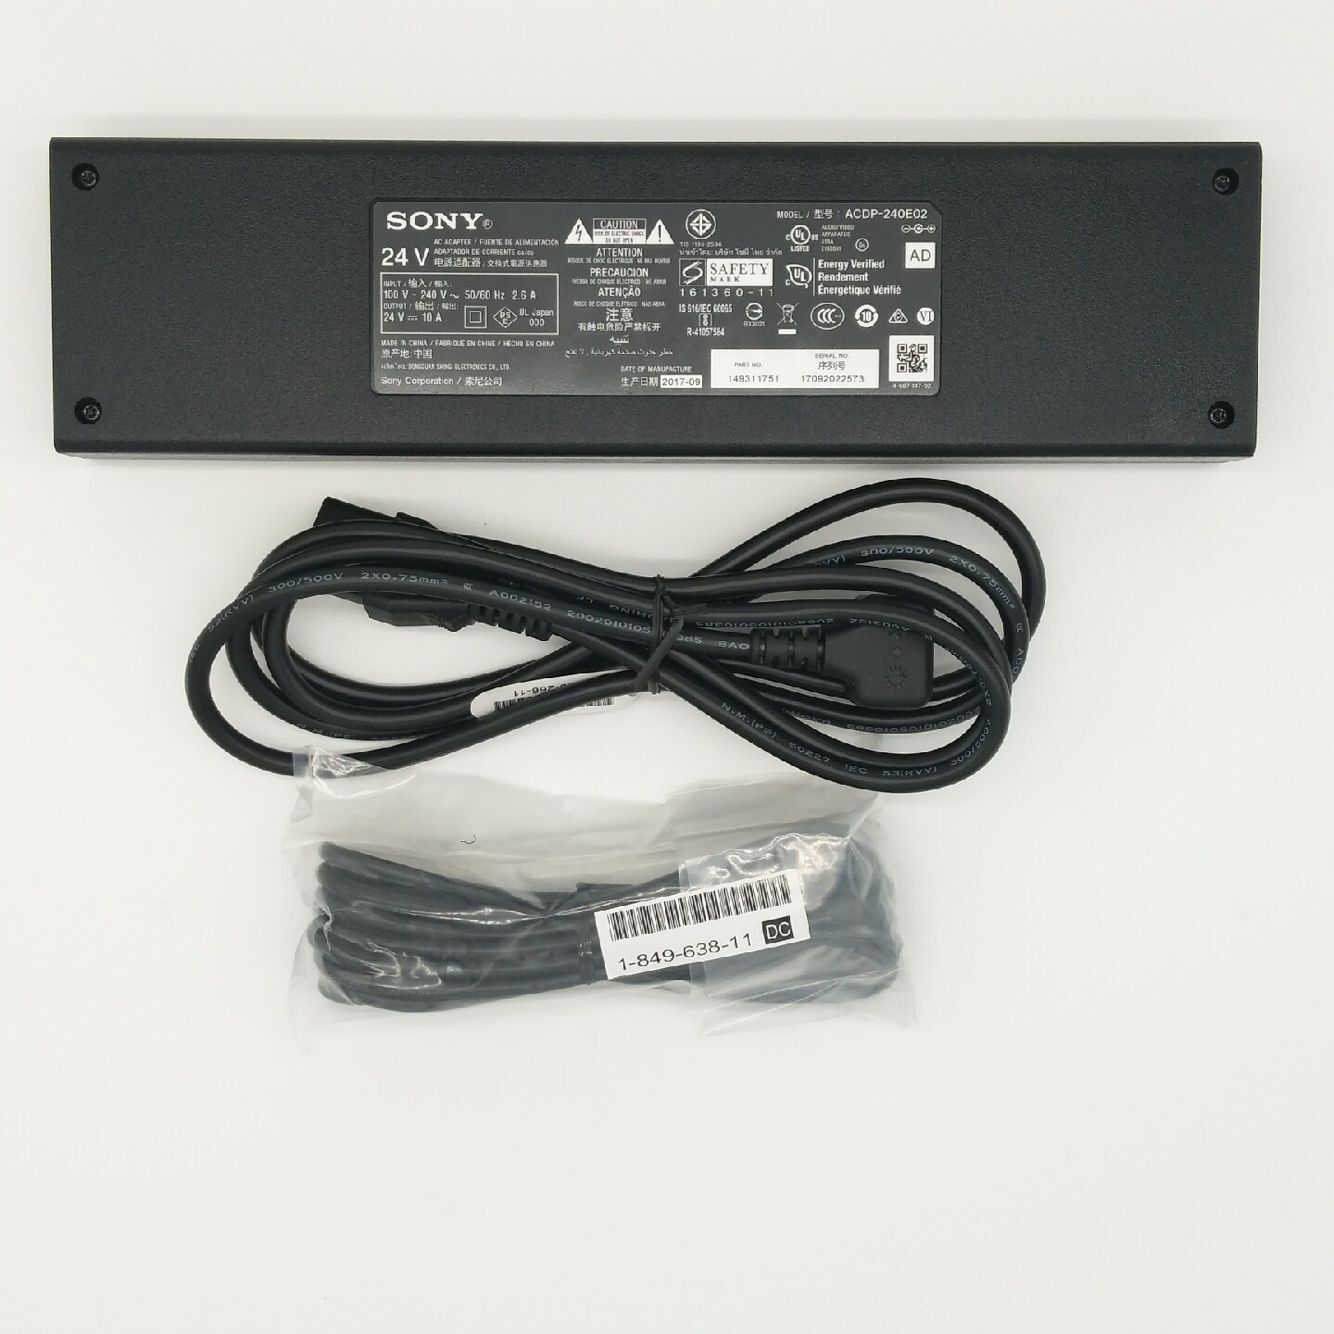 Original 240W Sony Acdp-240e01 1-493-117-52 AC Adaptor